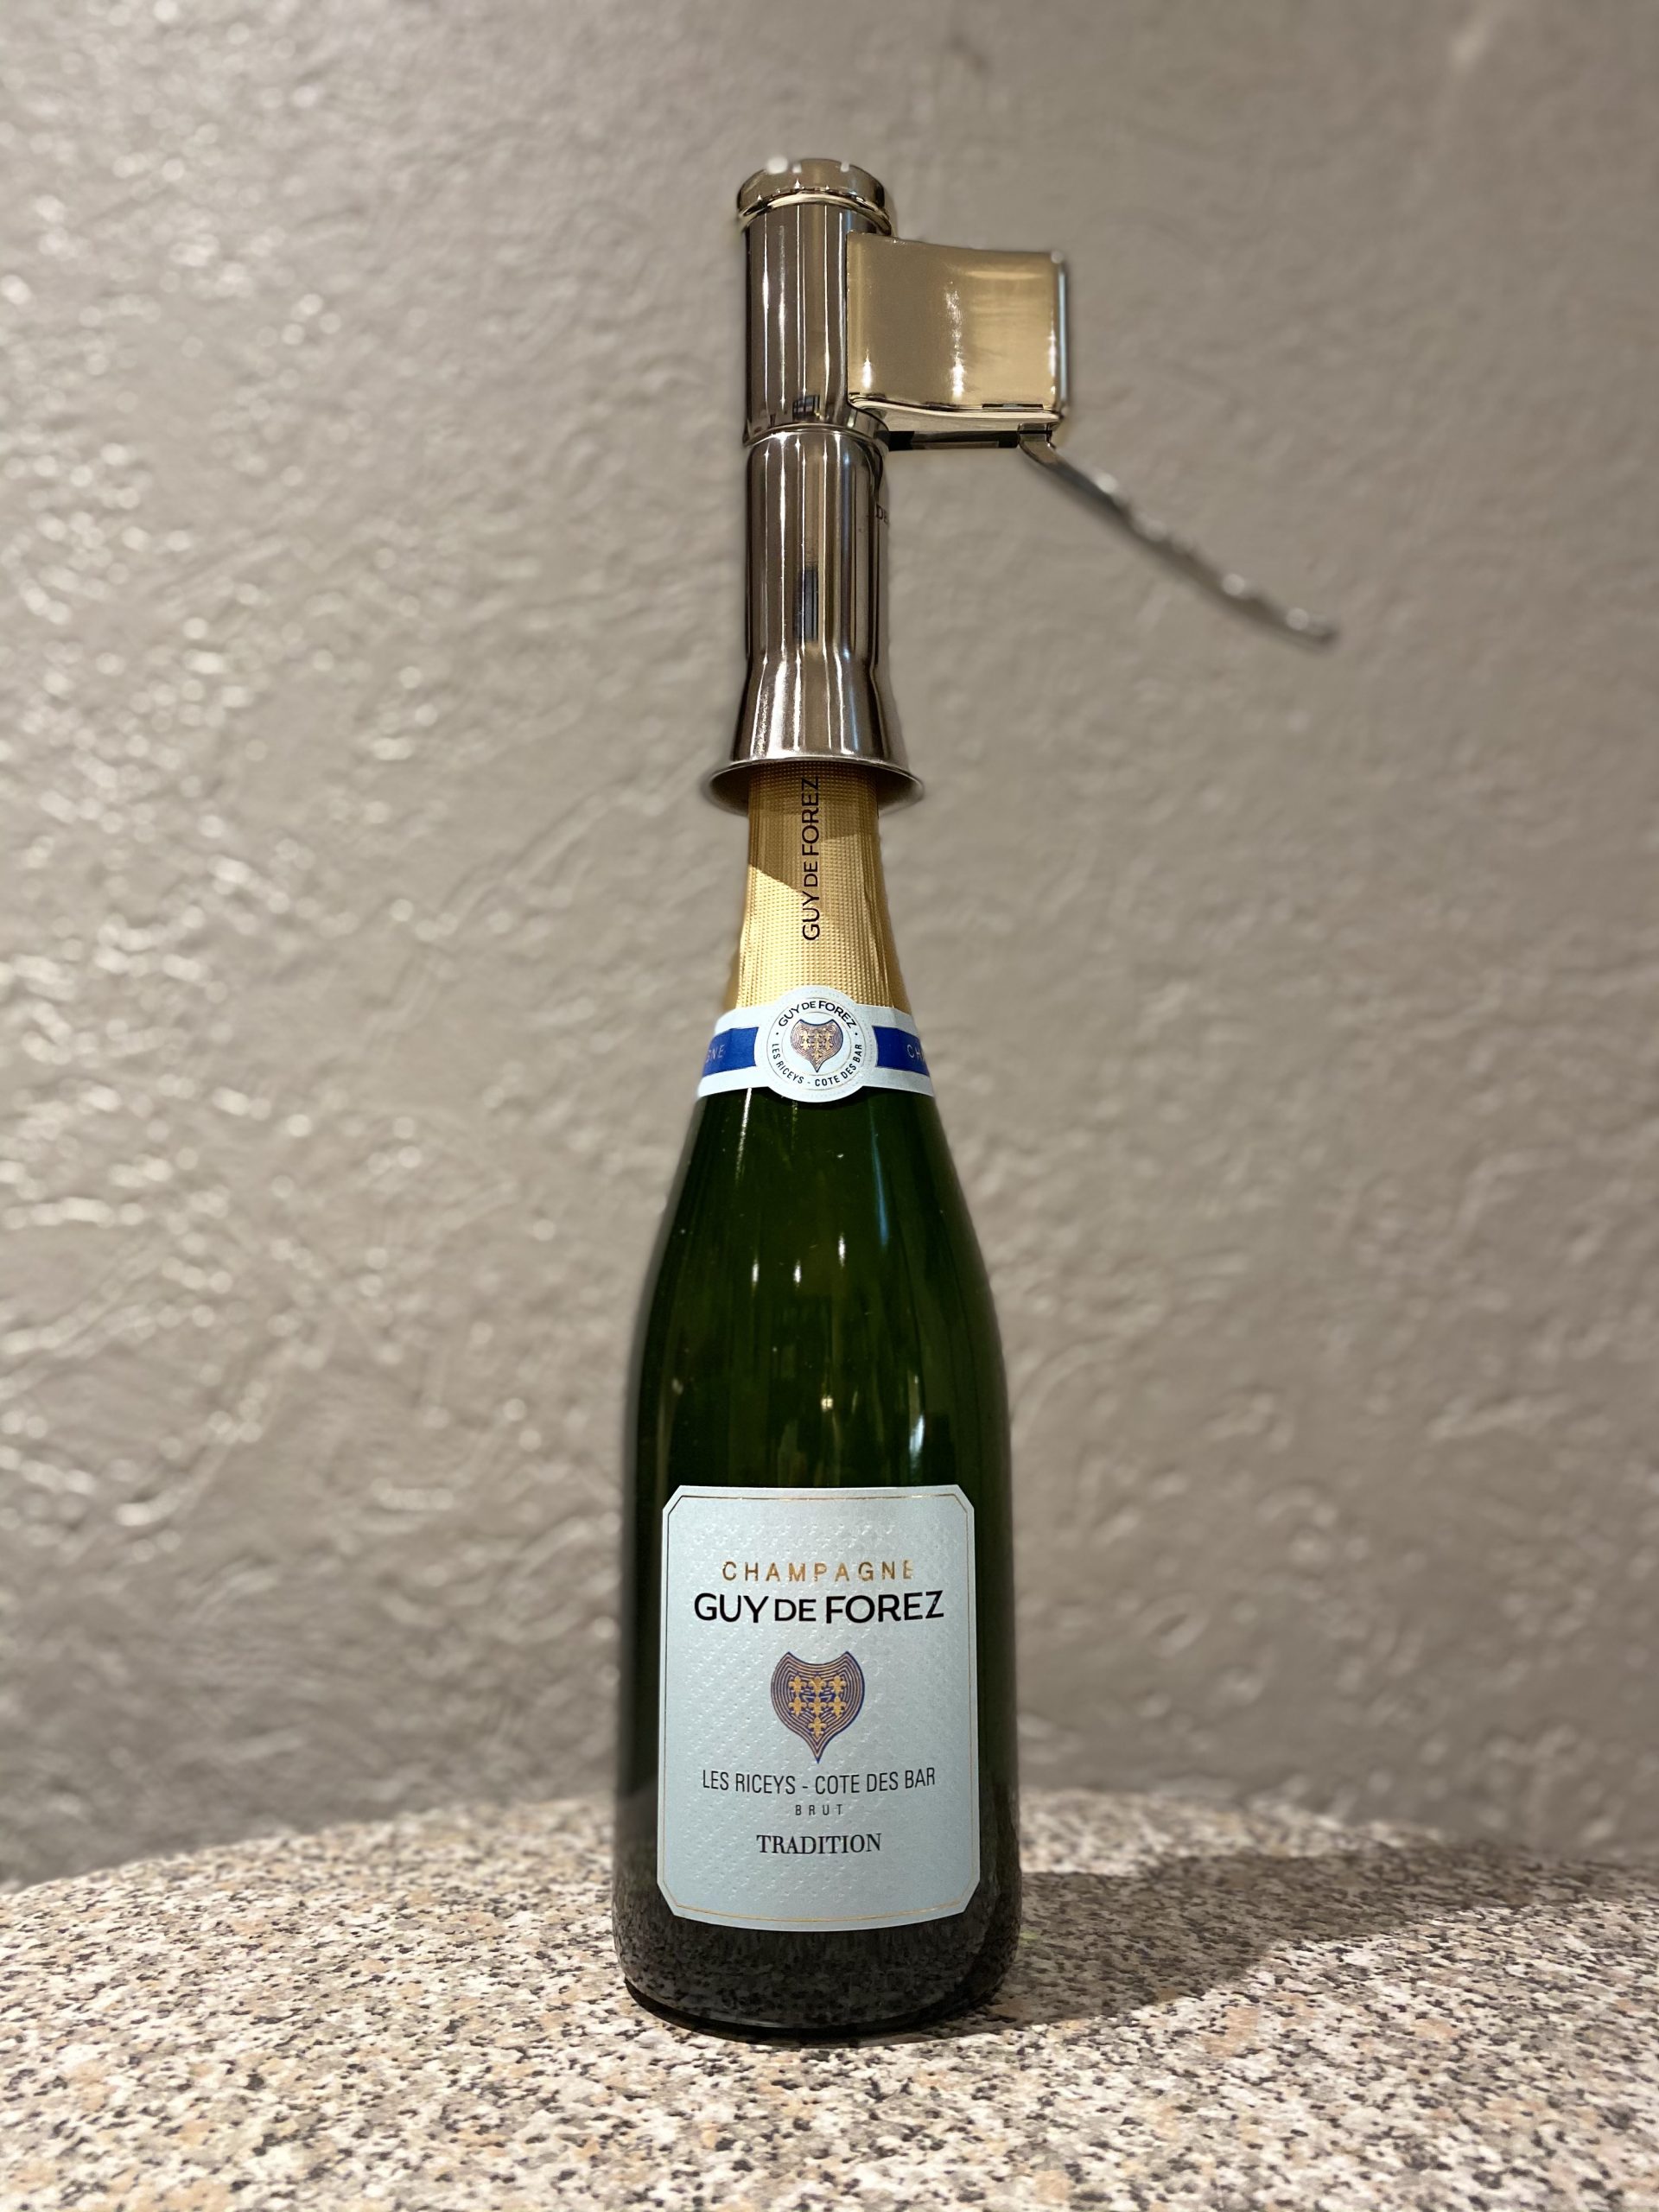 Tire bouchon Champagne DescorJet - Ouvre bouteille